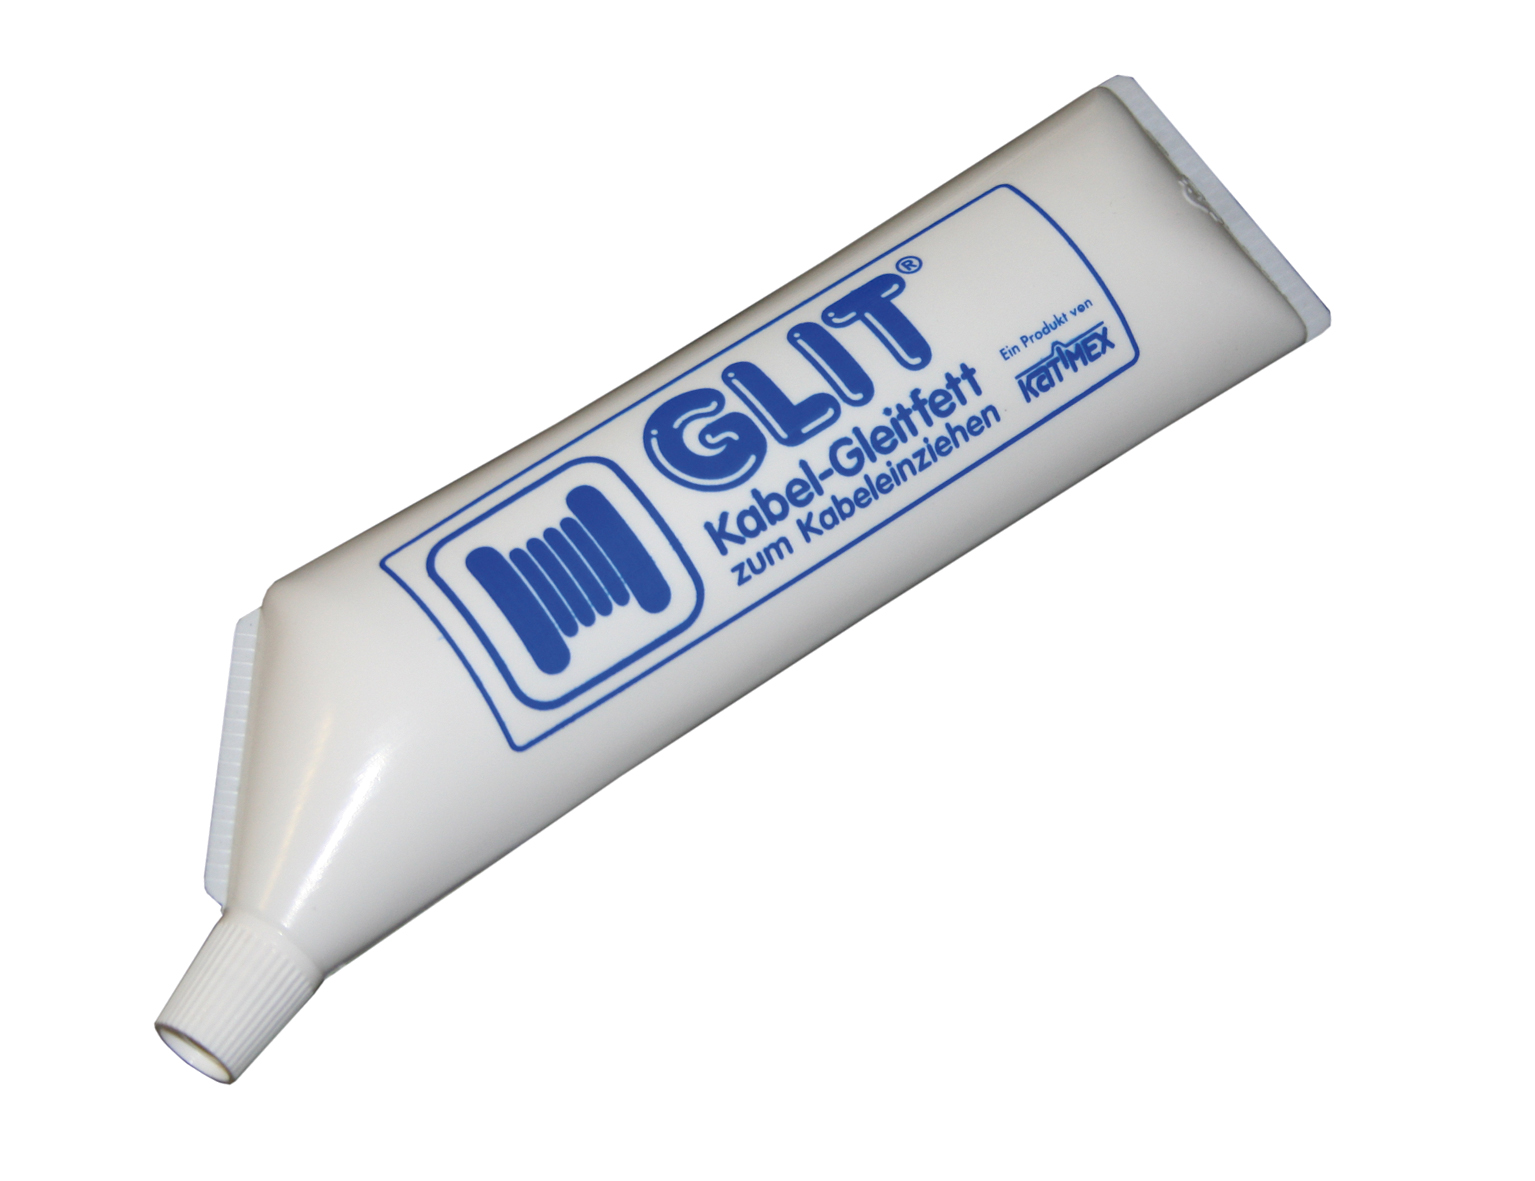 Glit-tube